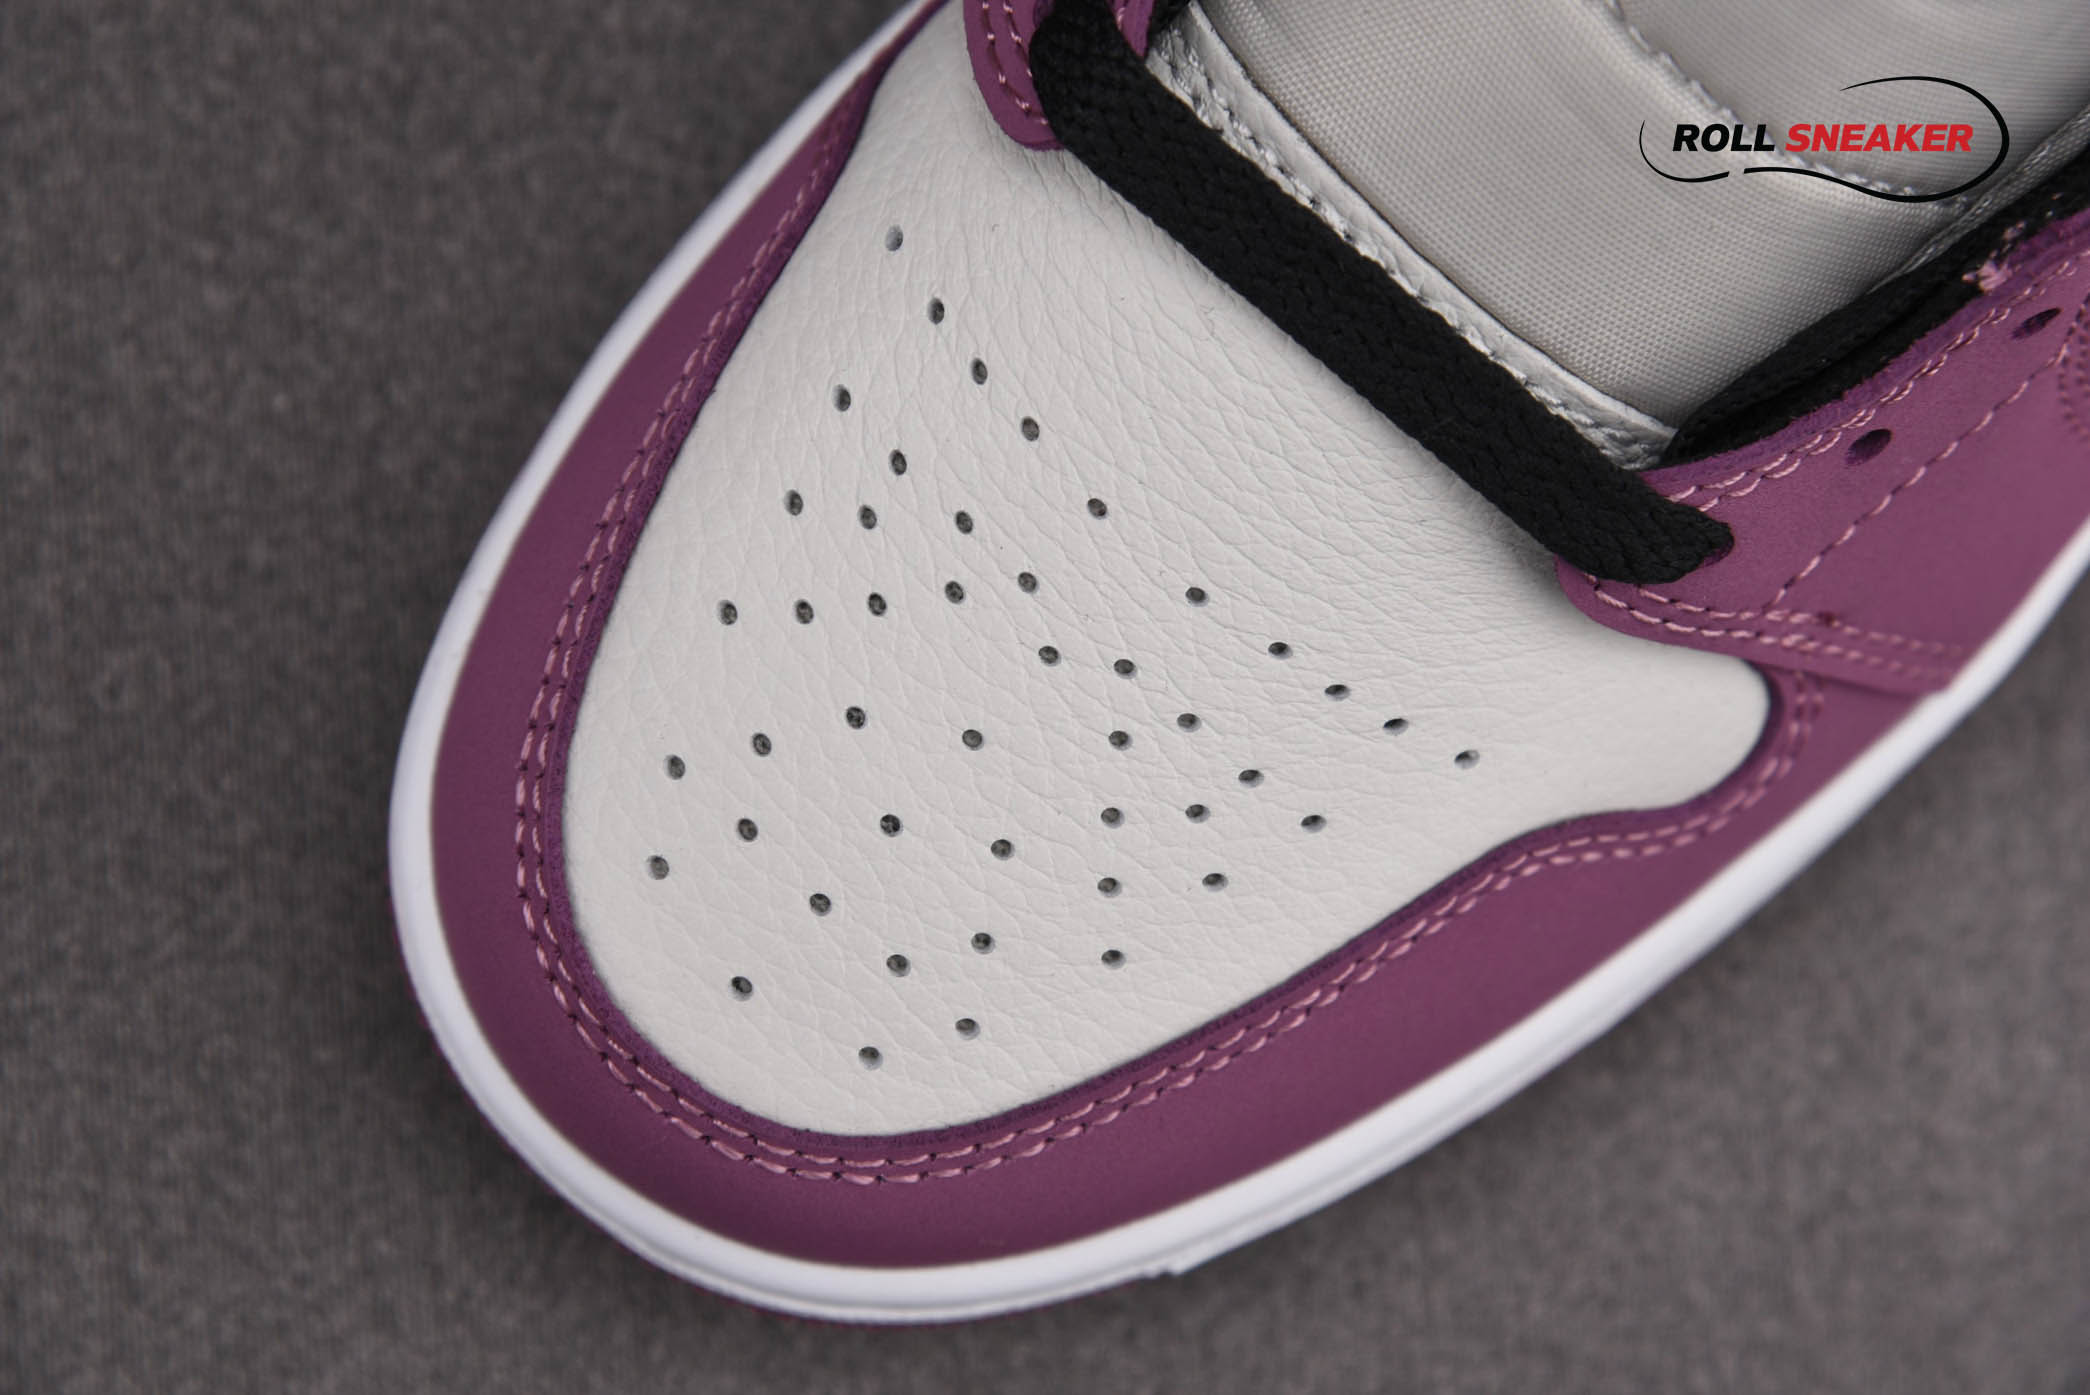 Nike Air Jordan 1 Mid Appears in Berry Pink